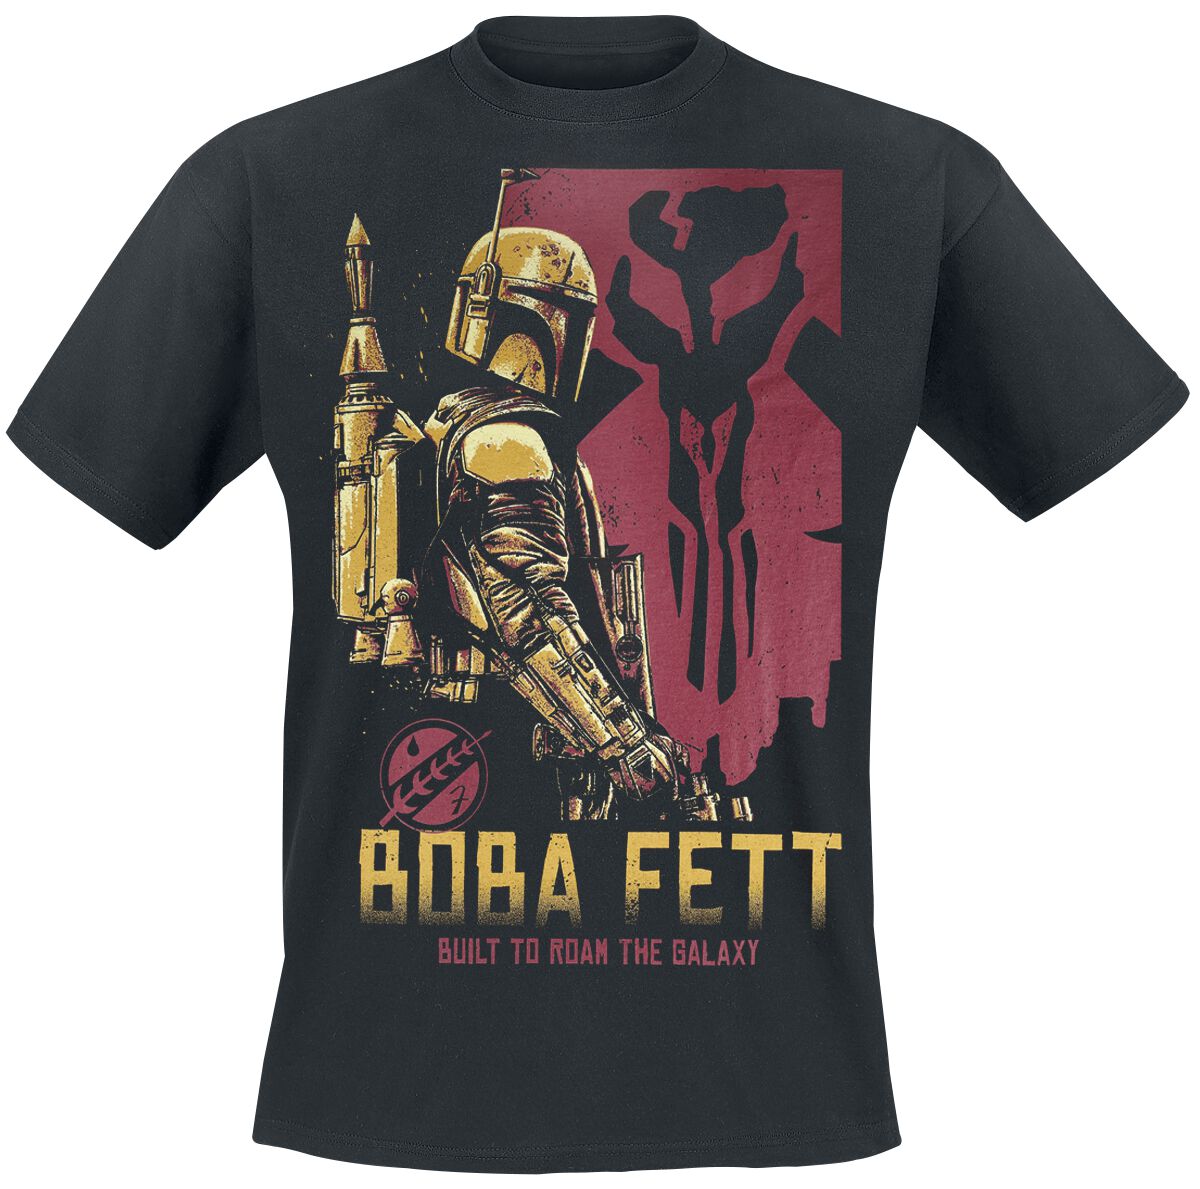 Star Wars T-Shirt - The Book Of Boba Fett - Roam The Galaxy - S bis 4XL - für Männer - Größe 4XL - schwarz  - EMP exklusives Merchandise!